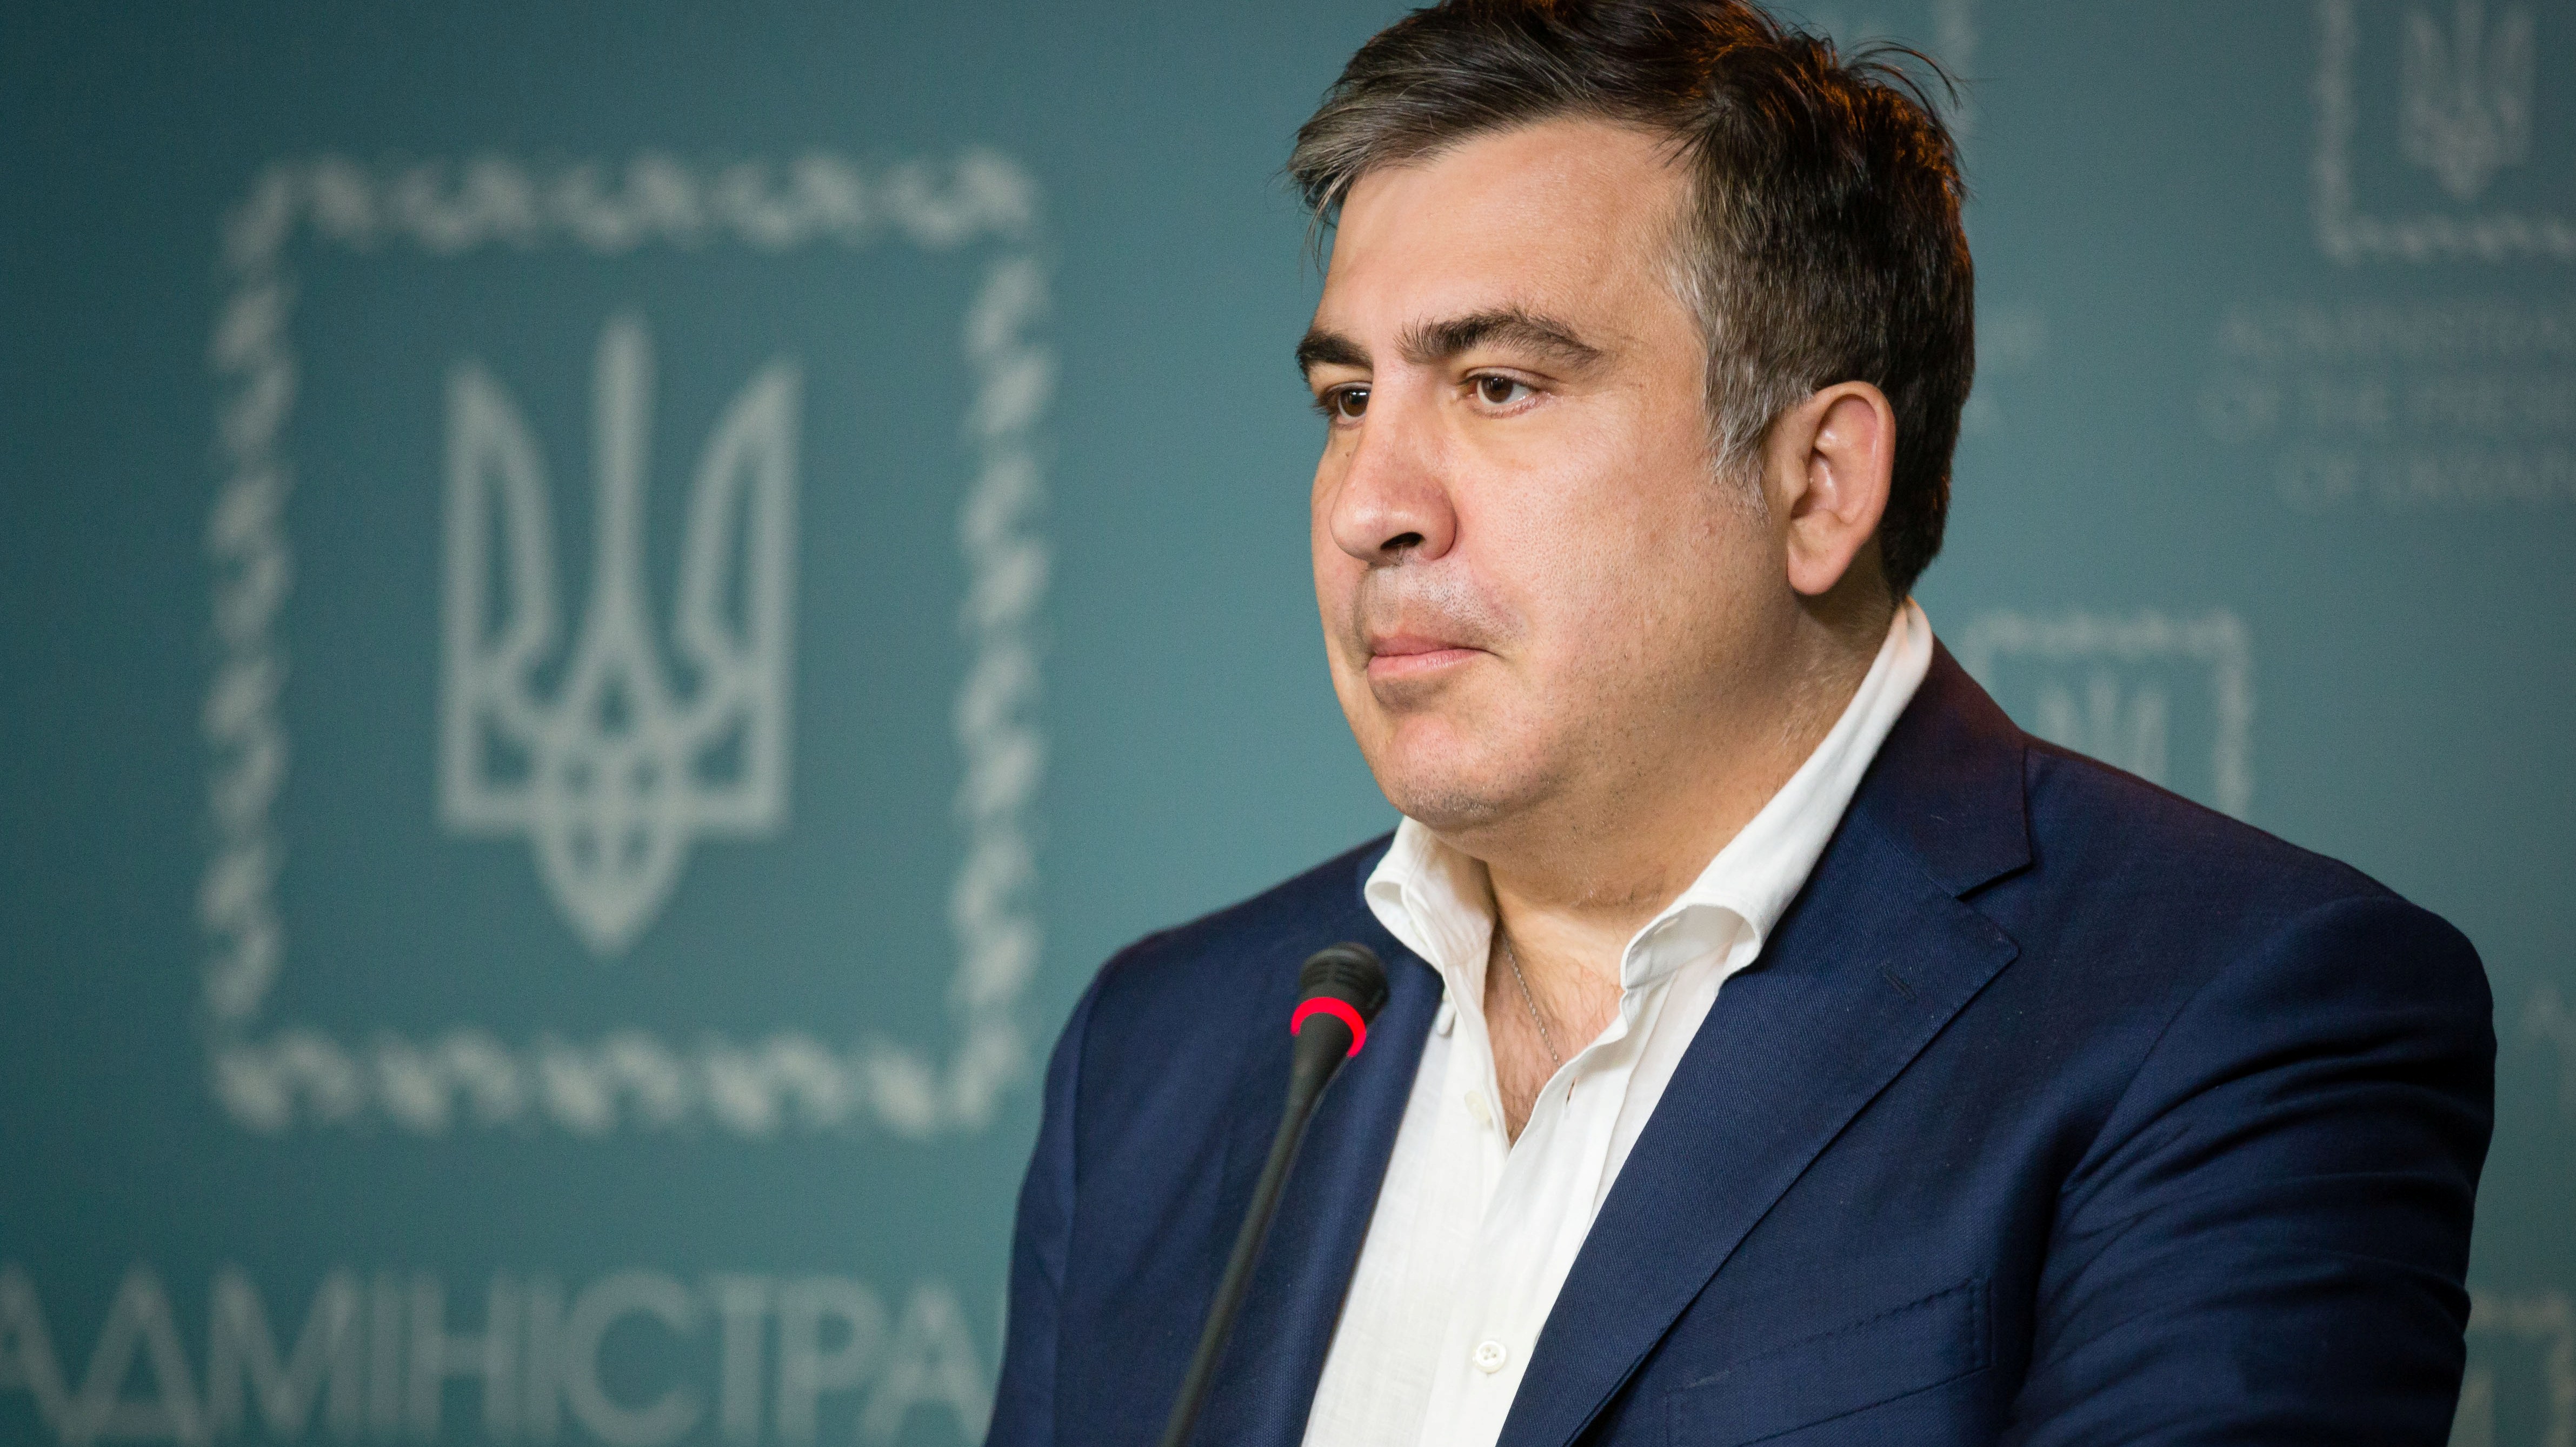 Пакт о "ненападении" или сговор: Саакашвили могут выдворить из Украины по запросу Грузии - источник в администрации Порошенко